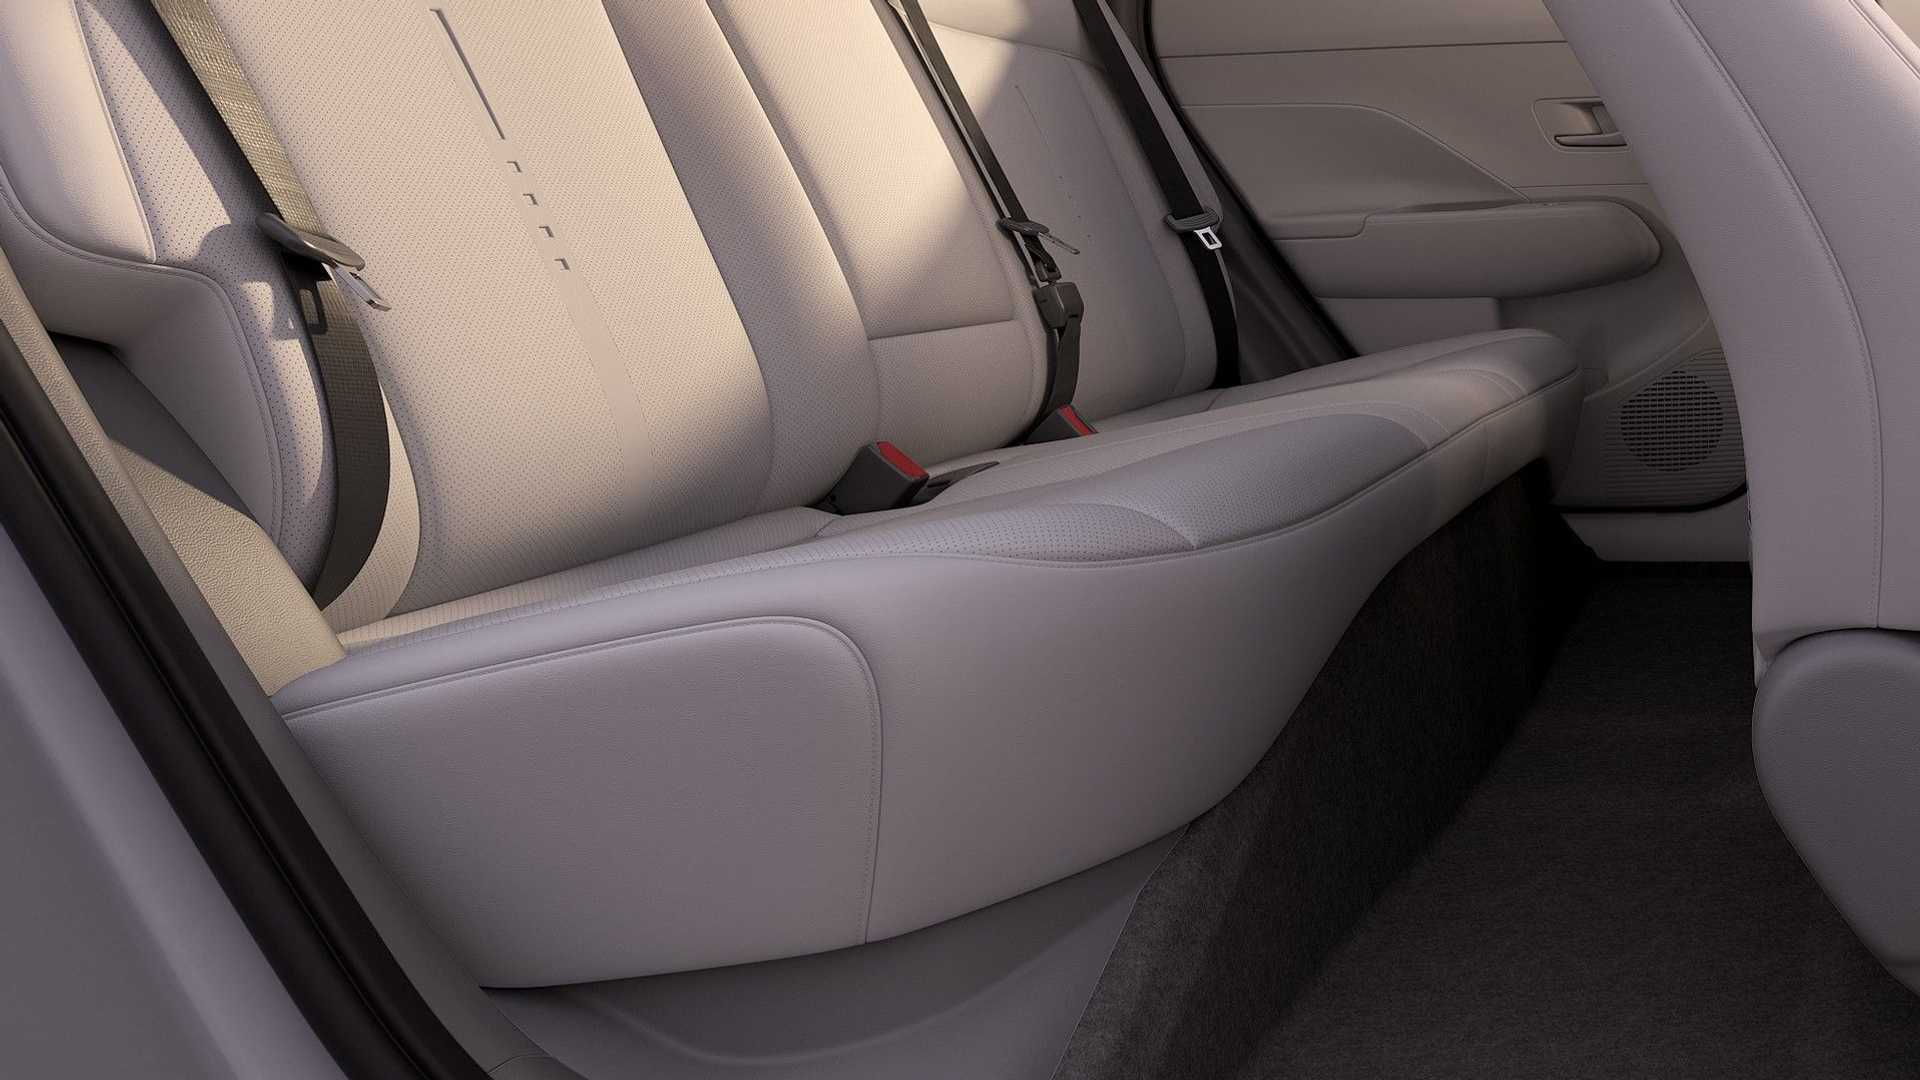 Yeni Hyundai Kona'nın detayları ve motor seçenekleri paylaşıldı